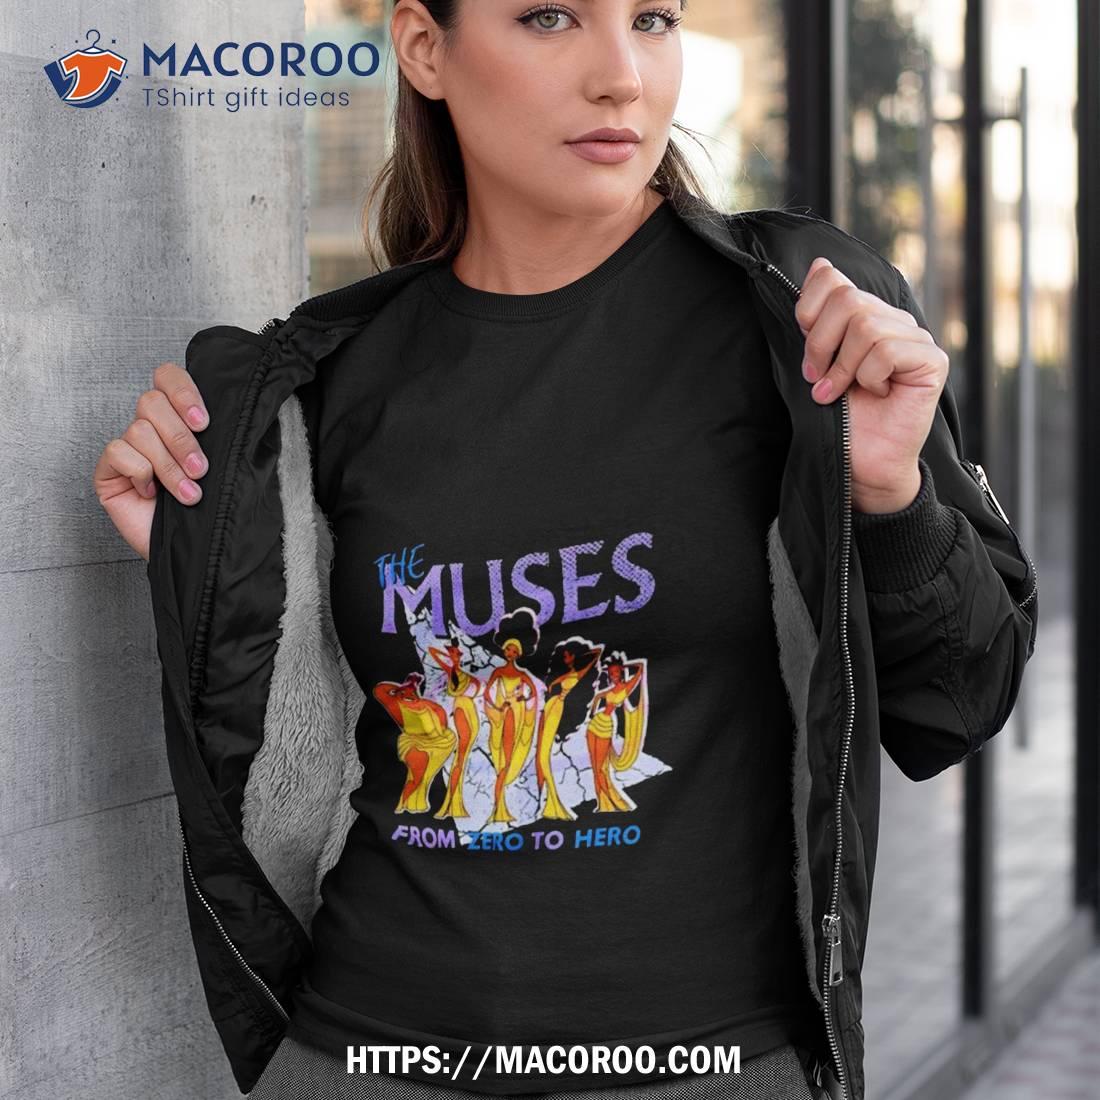 The Muses Zero To Hero Shirt Tshirt 3